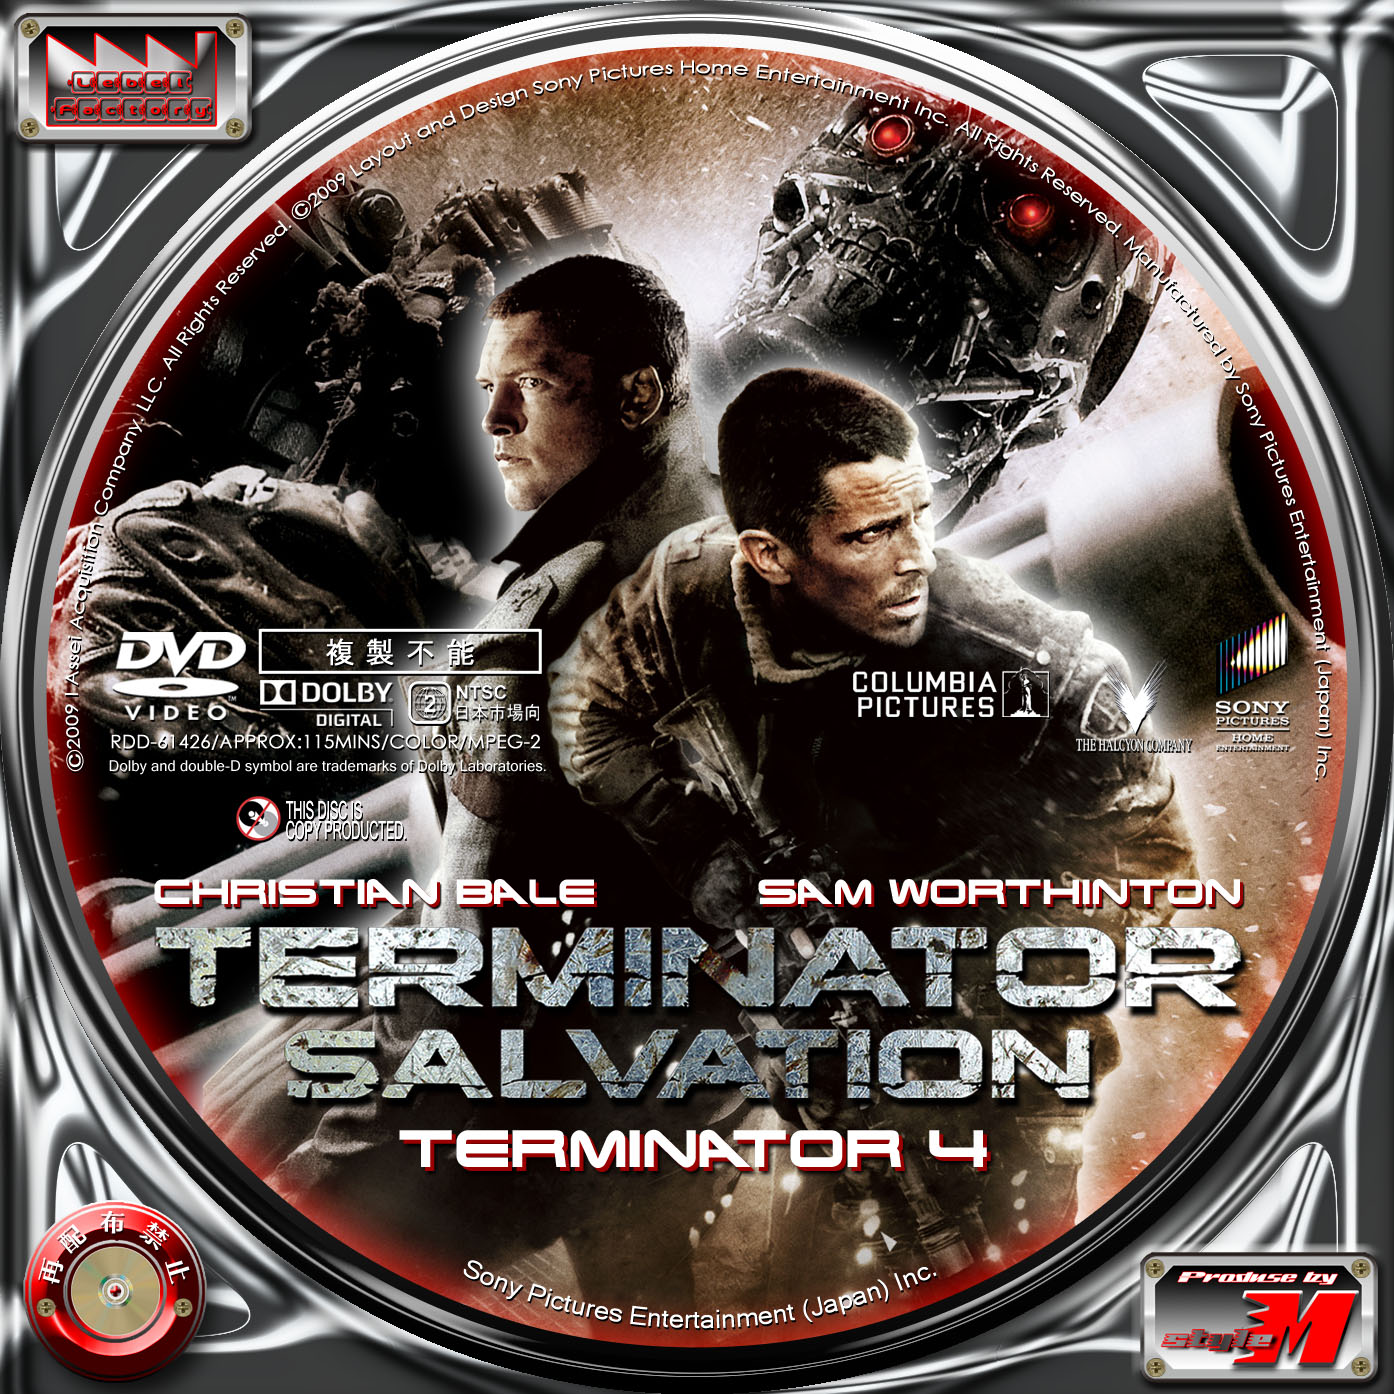 Label Factory - M style - ＜自作DVD・Blu-rayレーベル（ラベル）＞ ターミネーター4 - TERMINATOR  SALVATION -